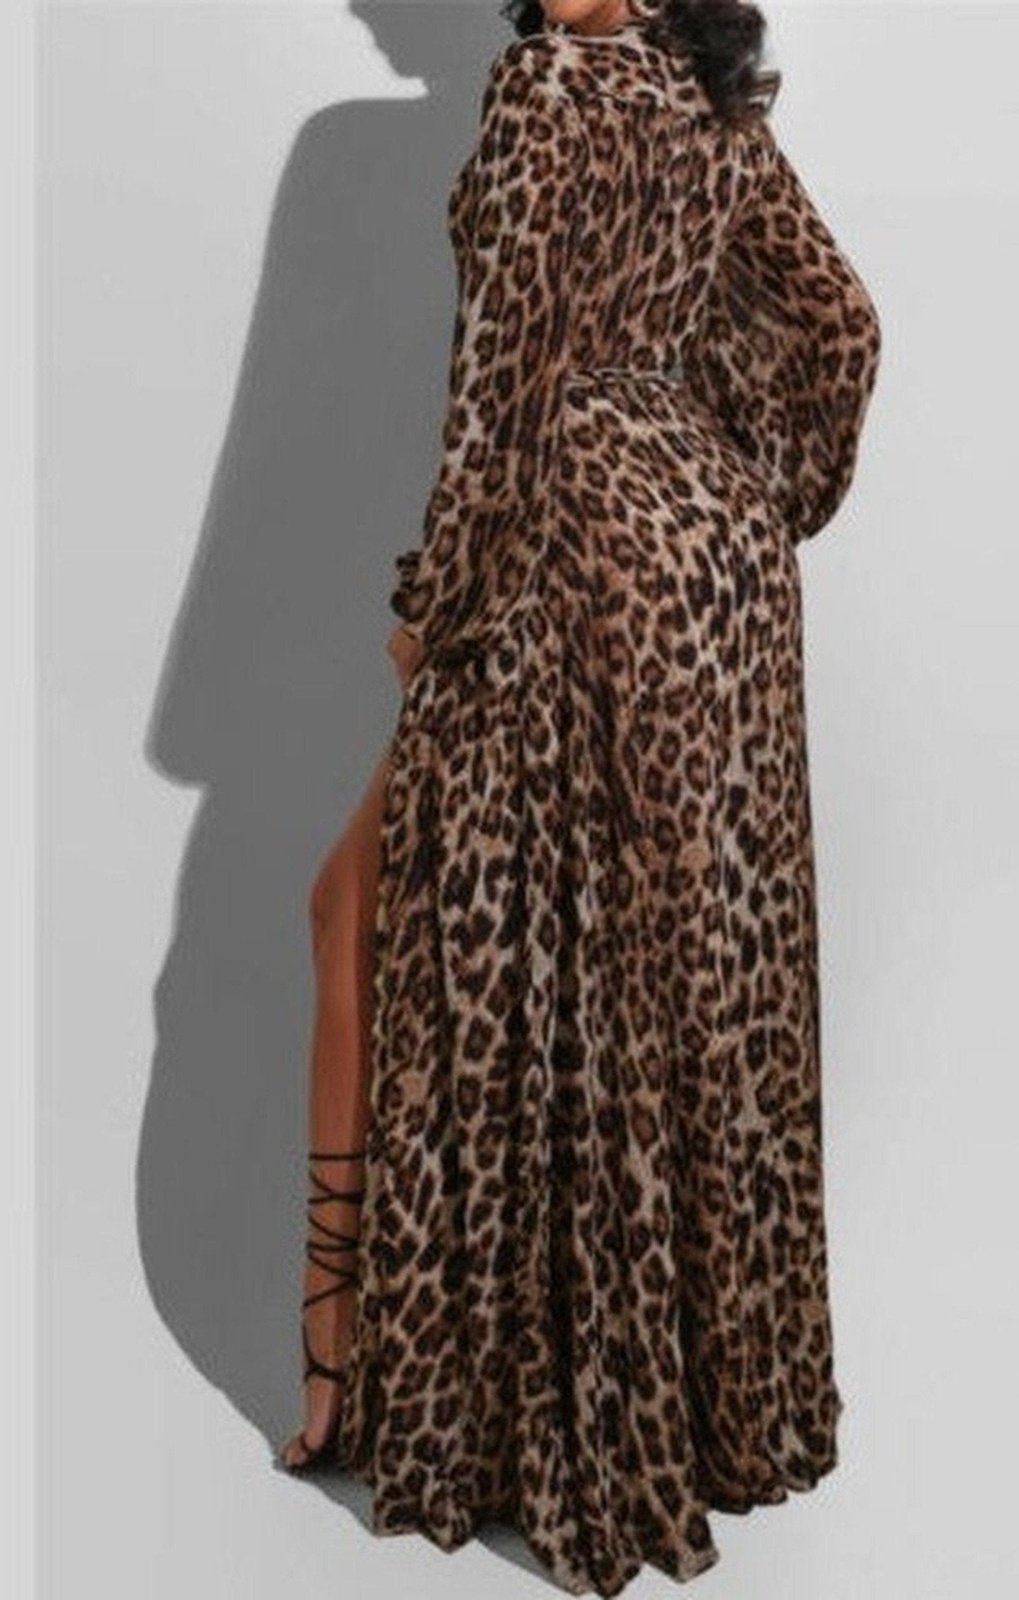 Leopard Print deep v-neck loose split dress (with belt)